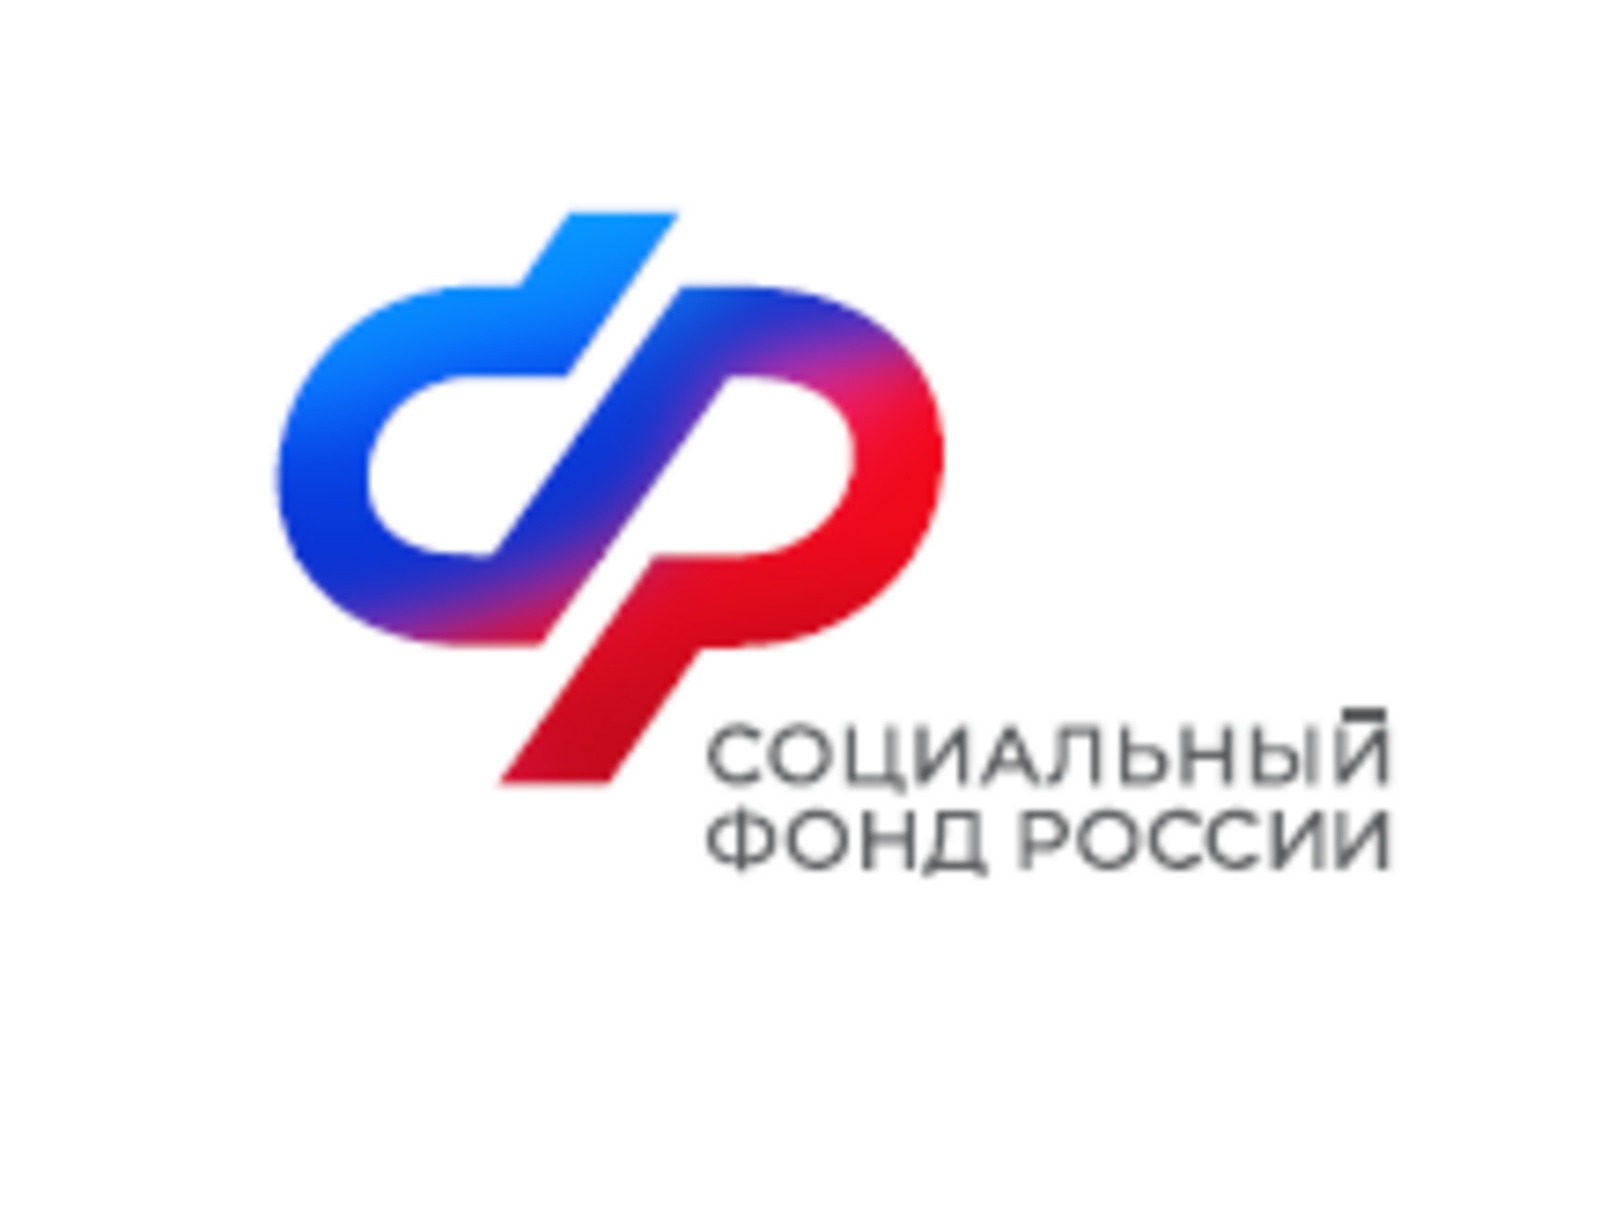 До 25 января работодателям Башкортостана  необходимо предоставить сведения в составе ЕФС-1